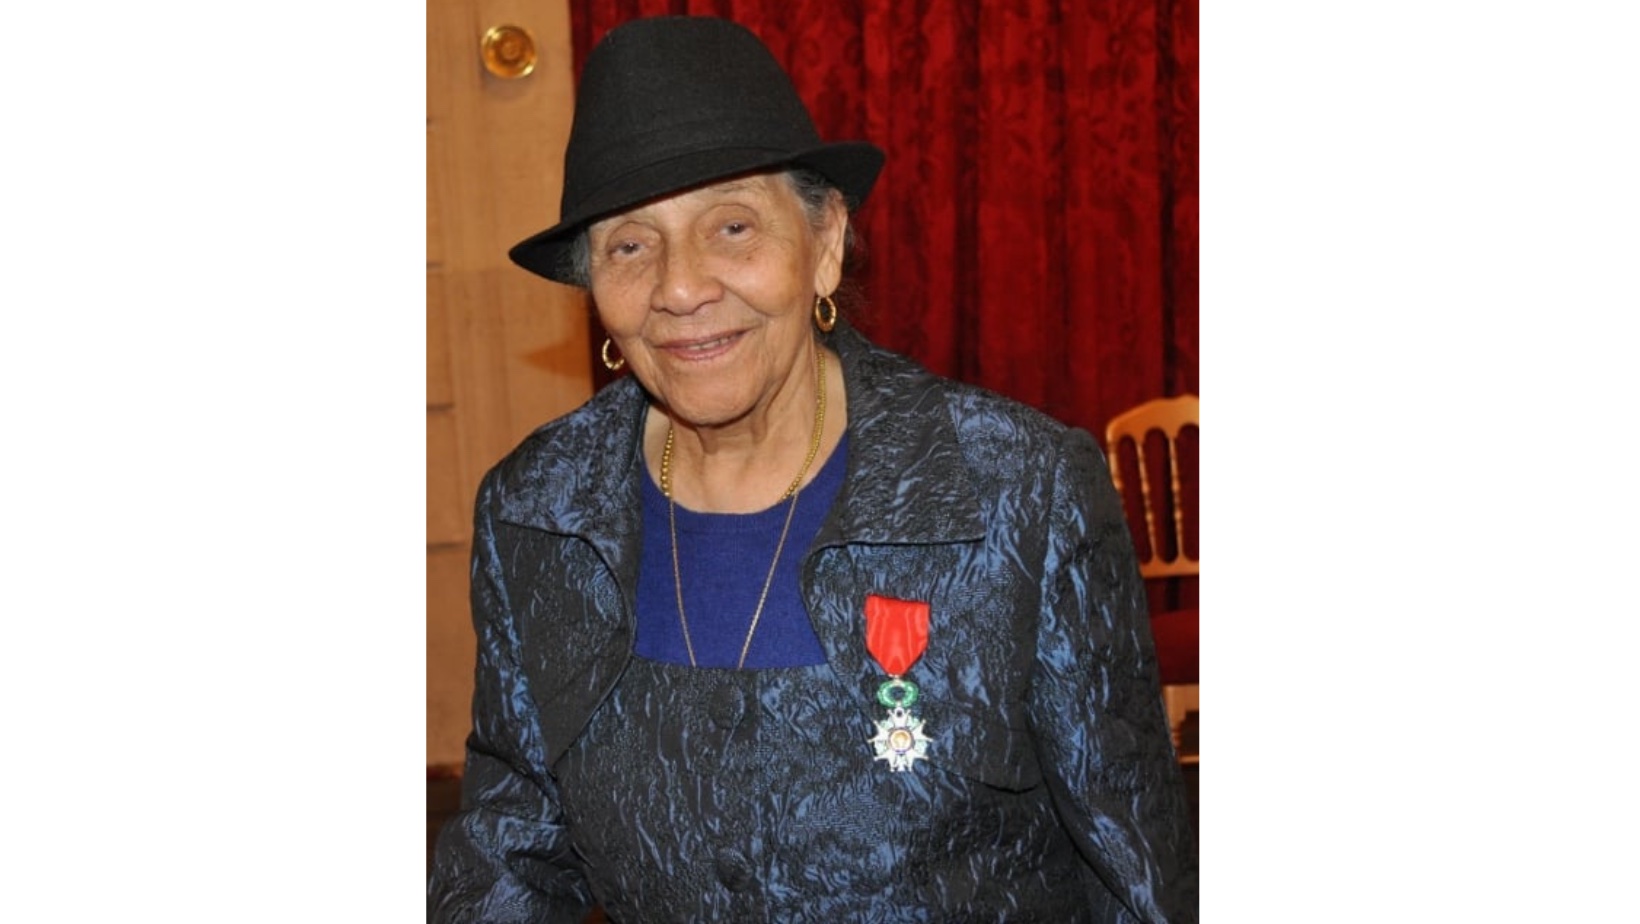     Jeanne Catayée, figure de la dissidence aux Antilles, s’en est allée à 103 ans

